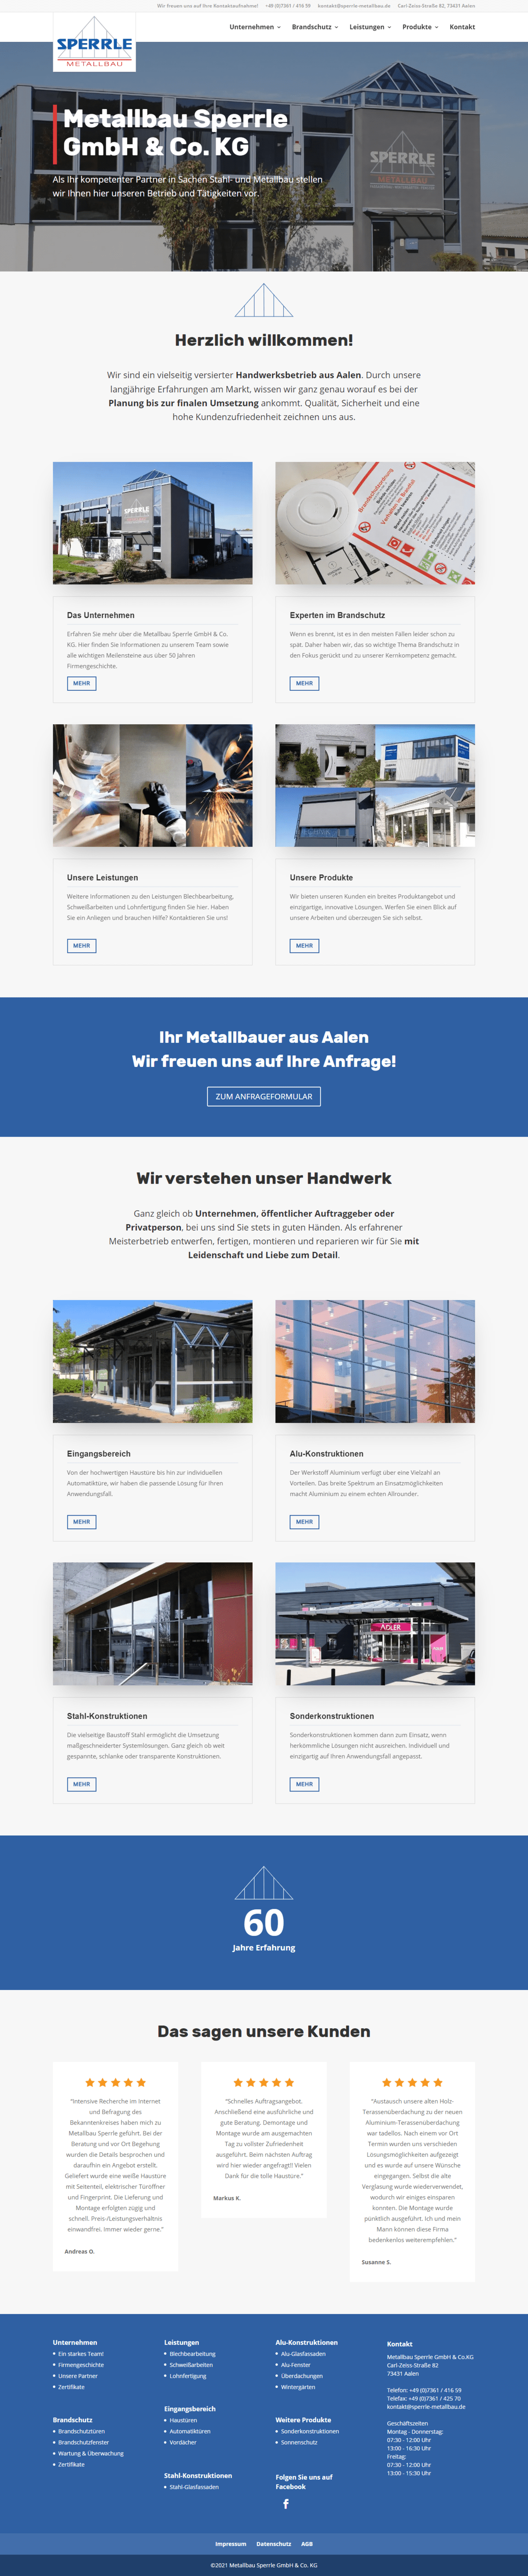 Internetauftritt der Sperrle Metallbau GmbH & Co. KG